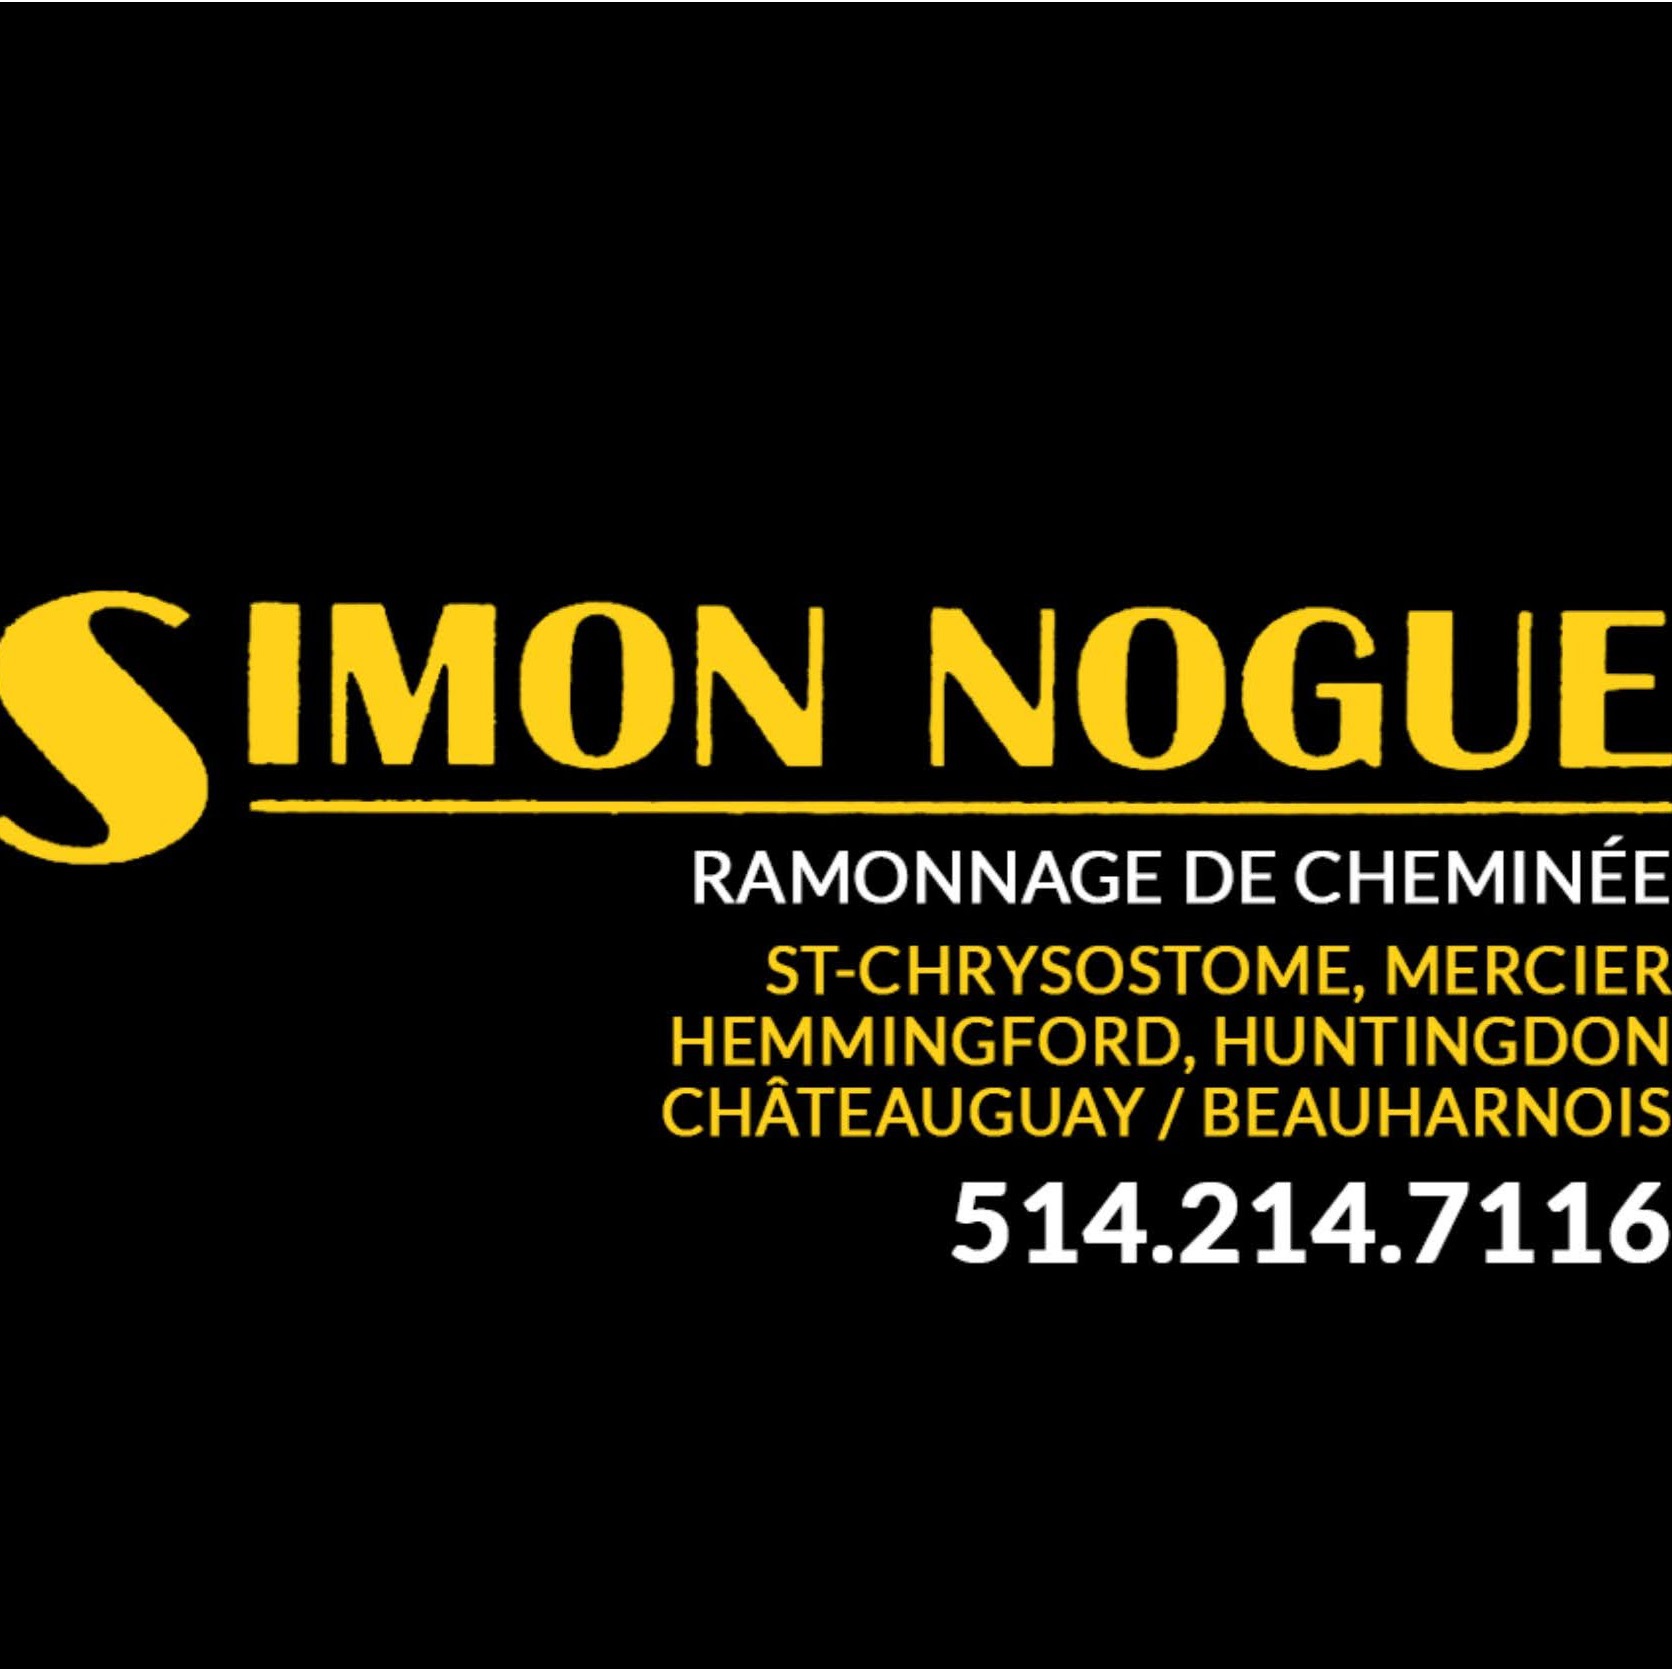 Ramonage Simon Nogue